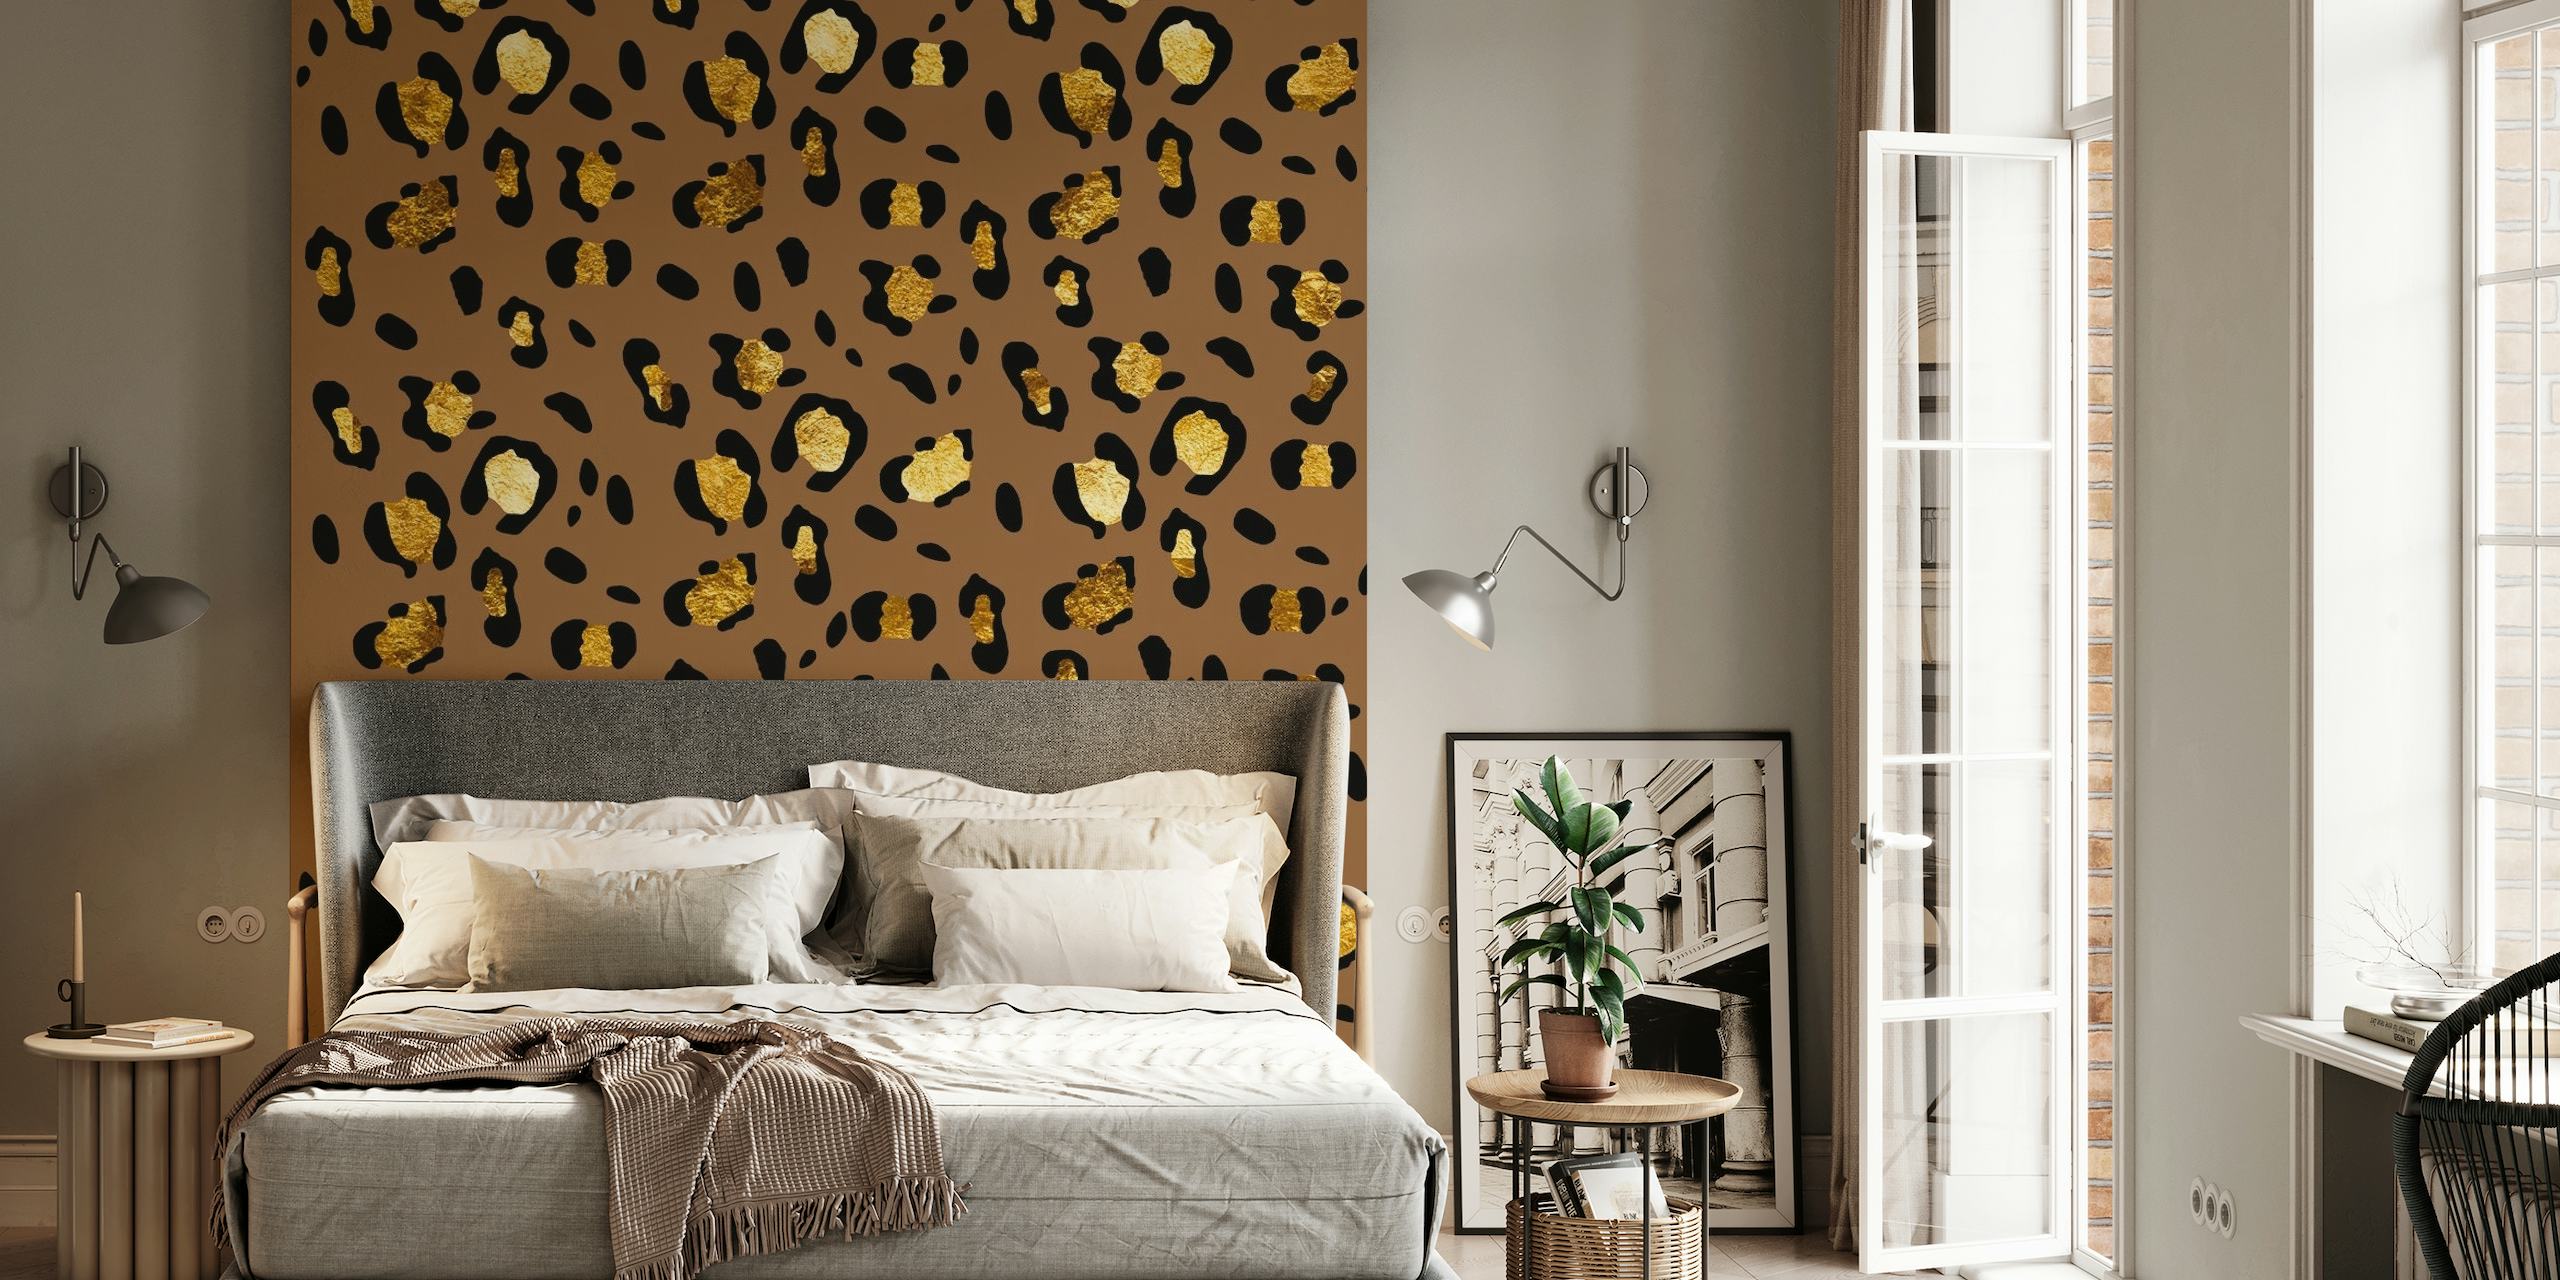 Papier peint mural Glam 29 Leopard Animal Print avec des taches dorées sur fond couleur café